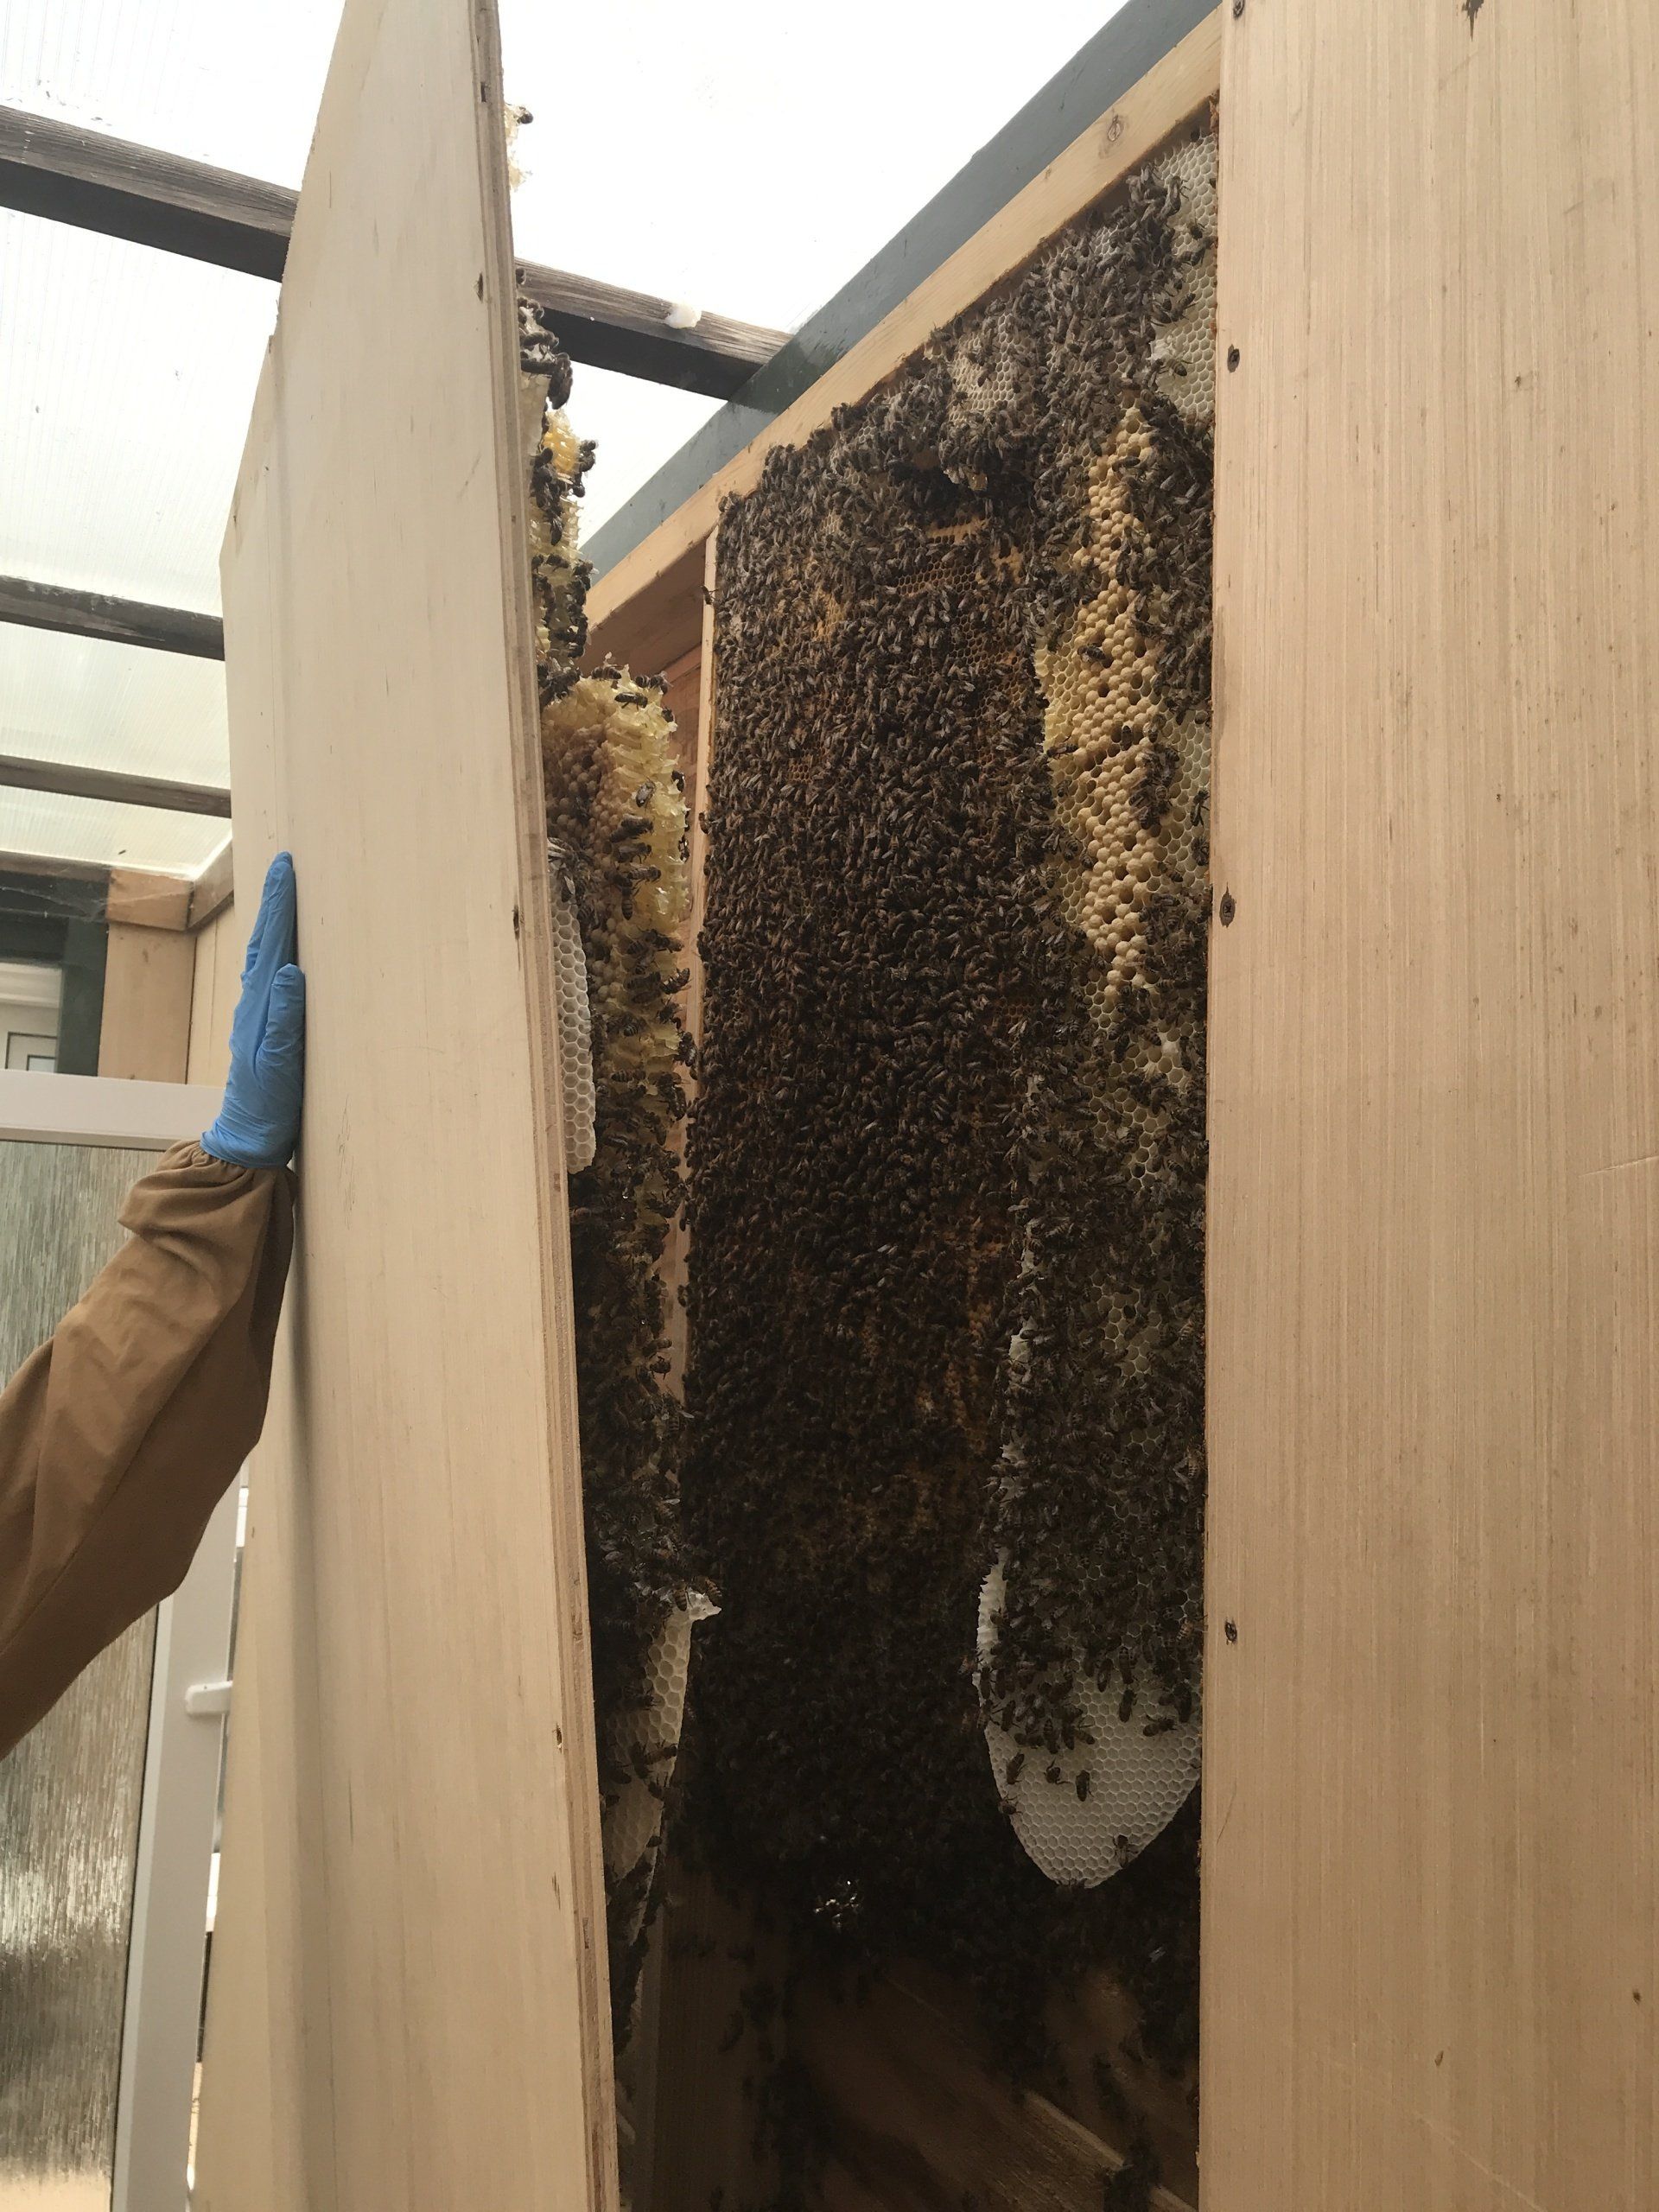 Bee Swarm in wooden building